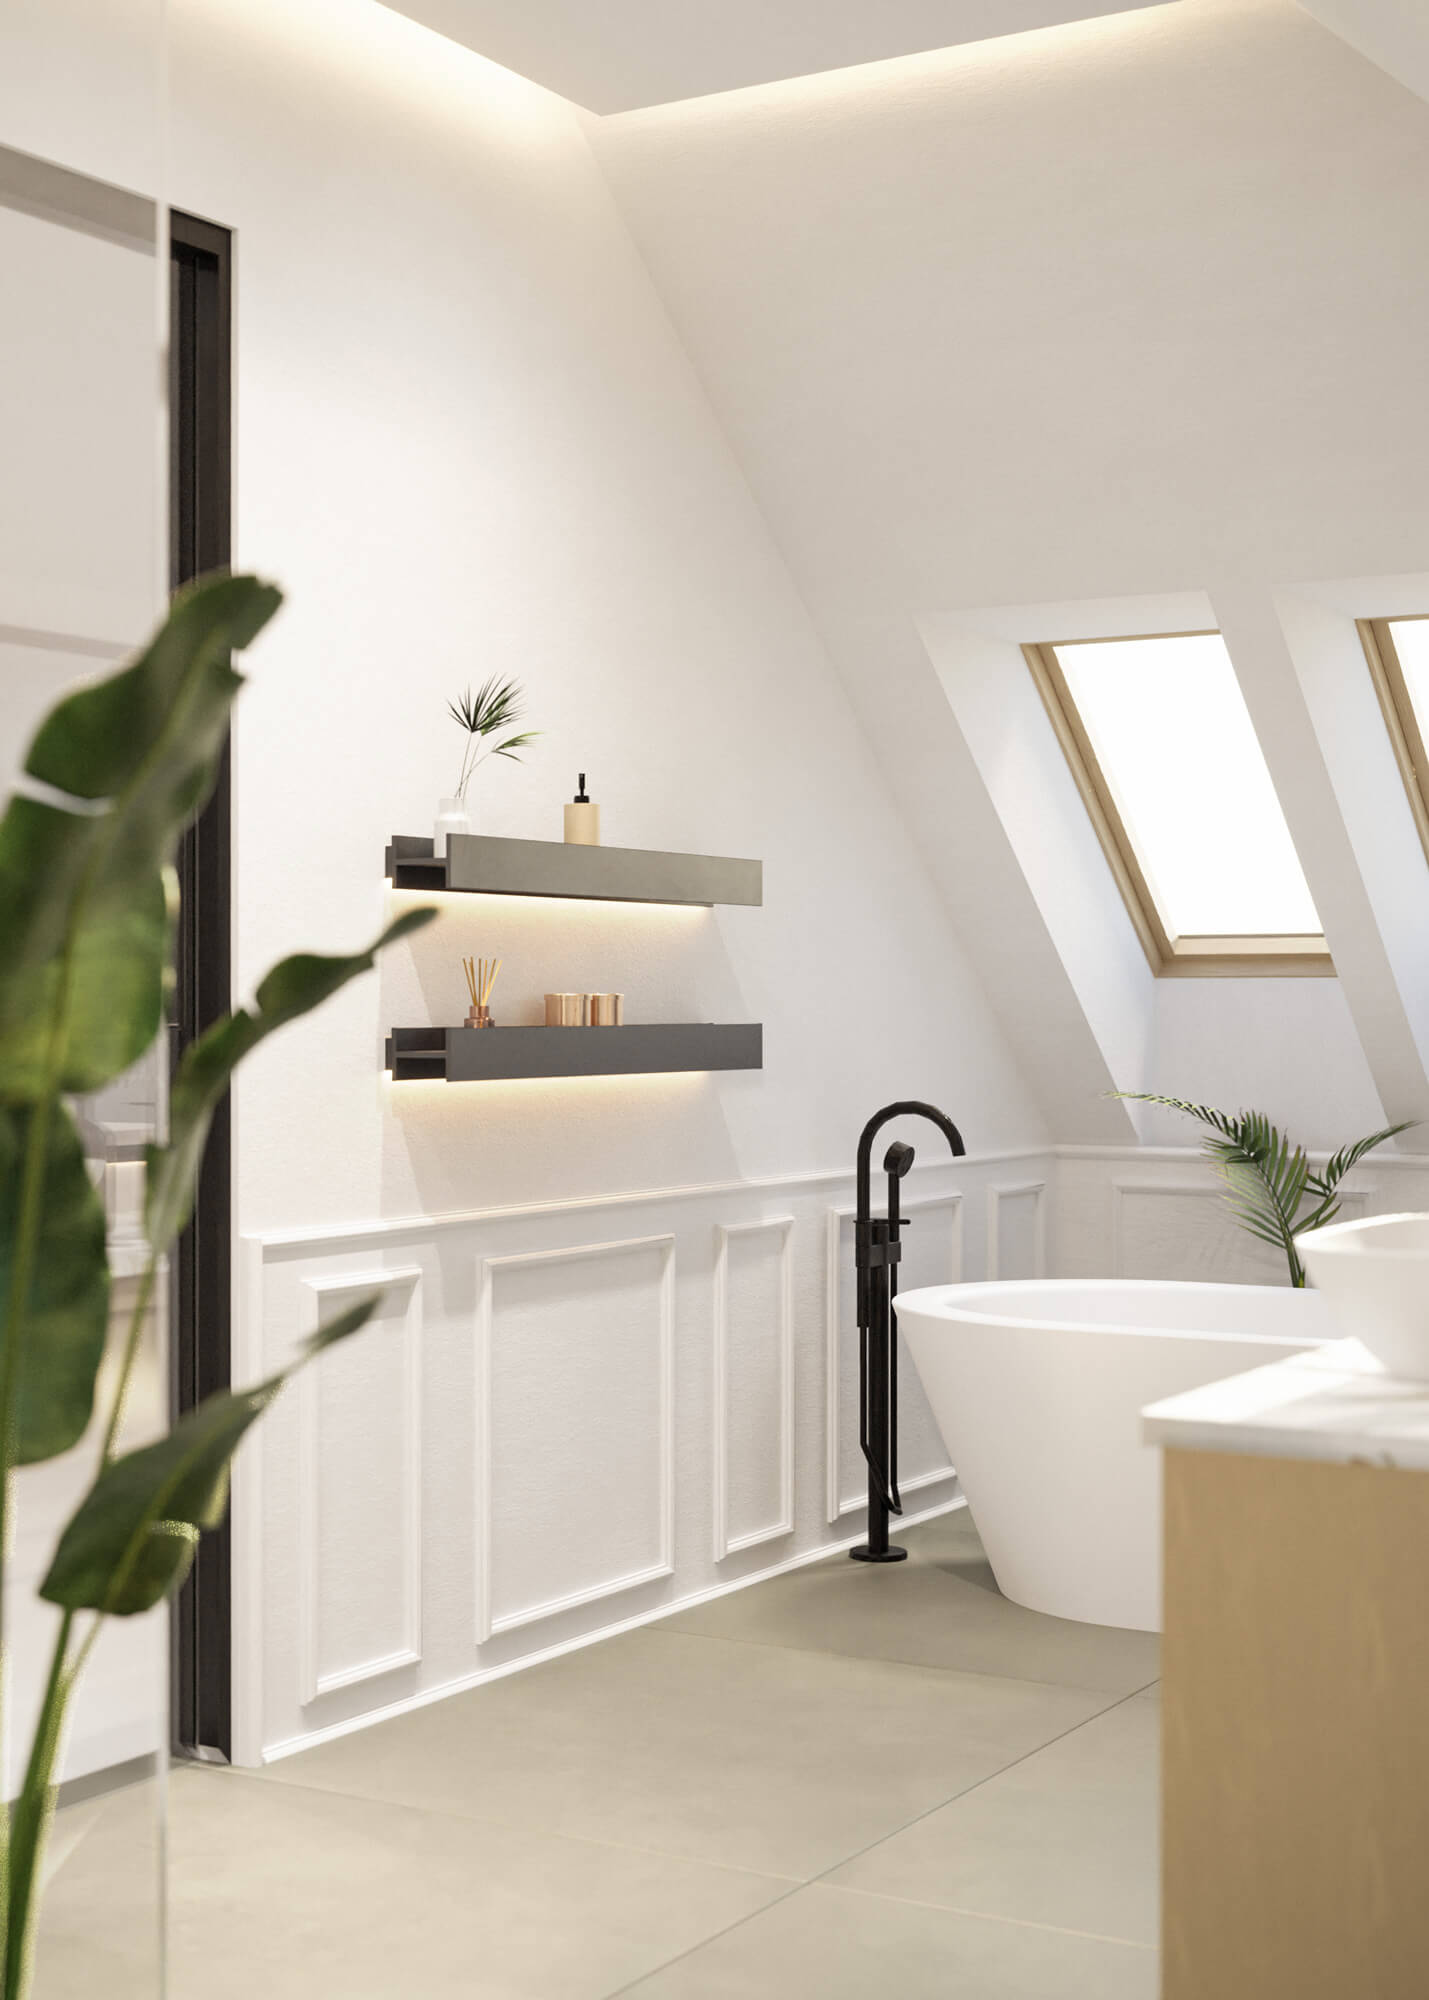 Belsőépítészeti fürdőszoba látványterv sötét designer polcokkal és fali díszlécekkel